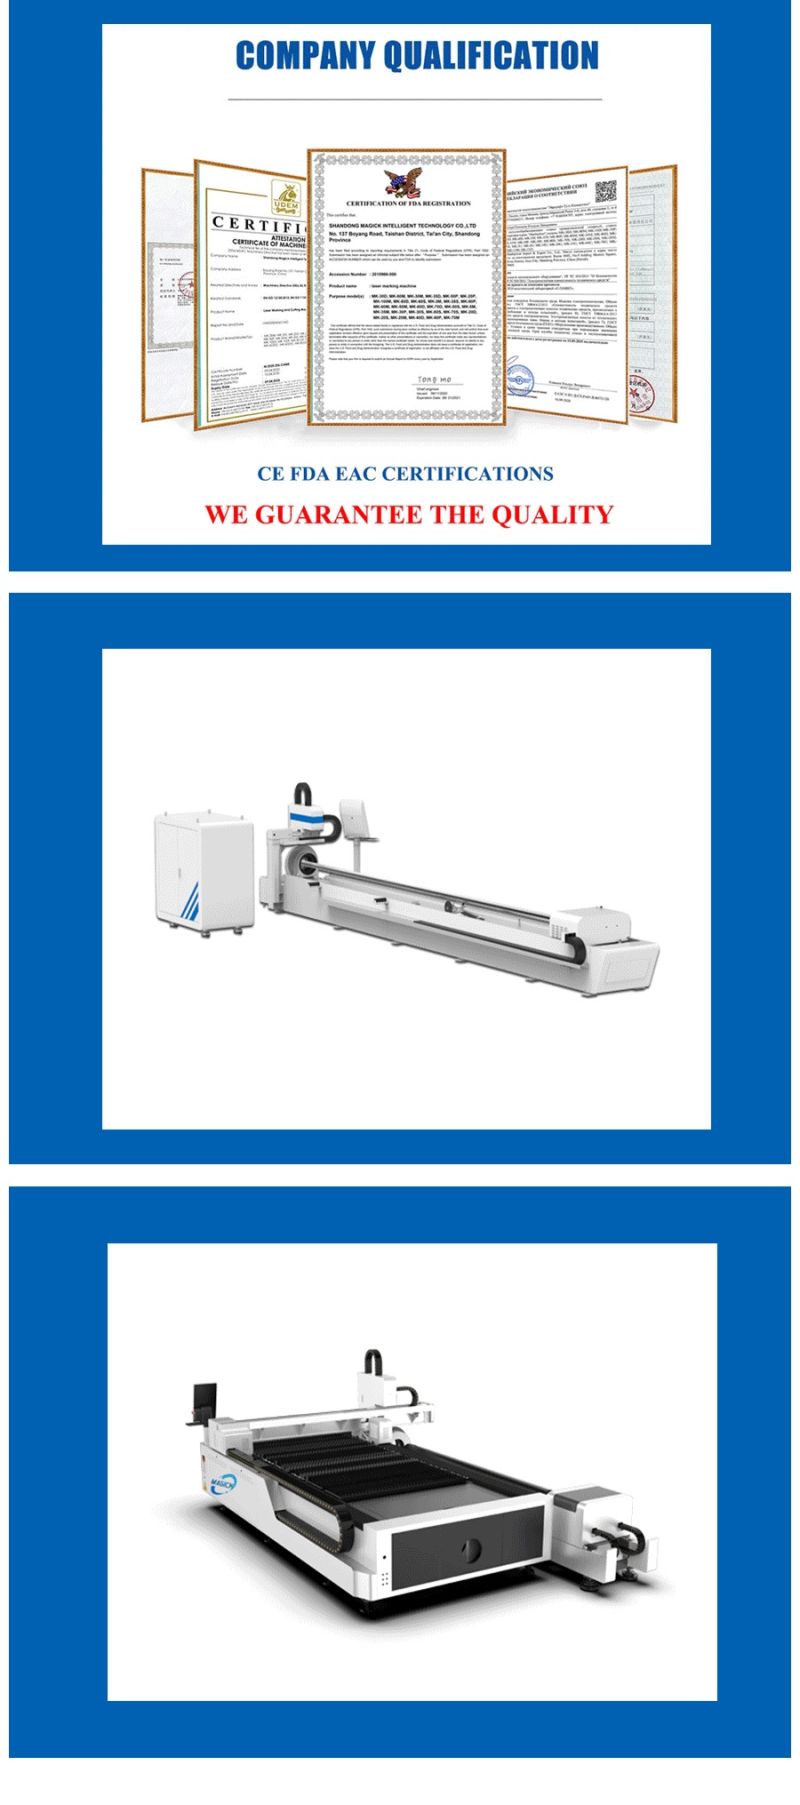 CNC Laser Cutter 3015 Fiber Laser Cutting Machine